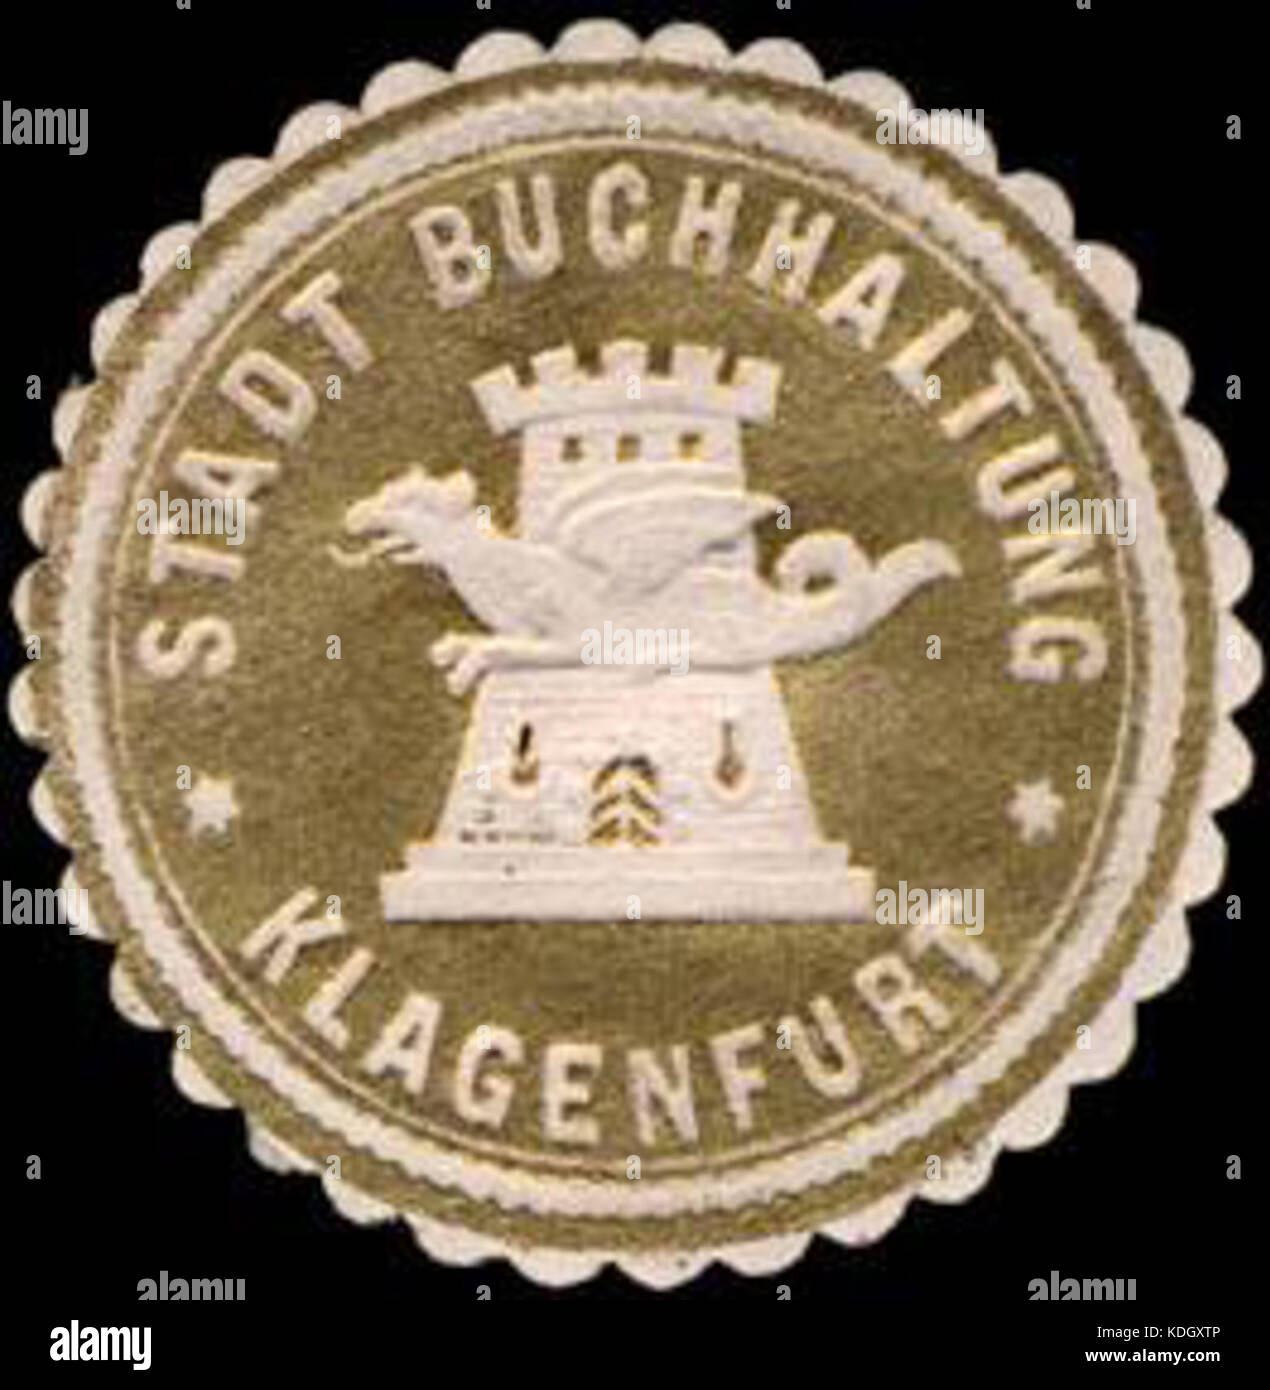 Siegelmarke Stadt Buchhaltung   Klagenfurt W0227274 Stock Photo